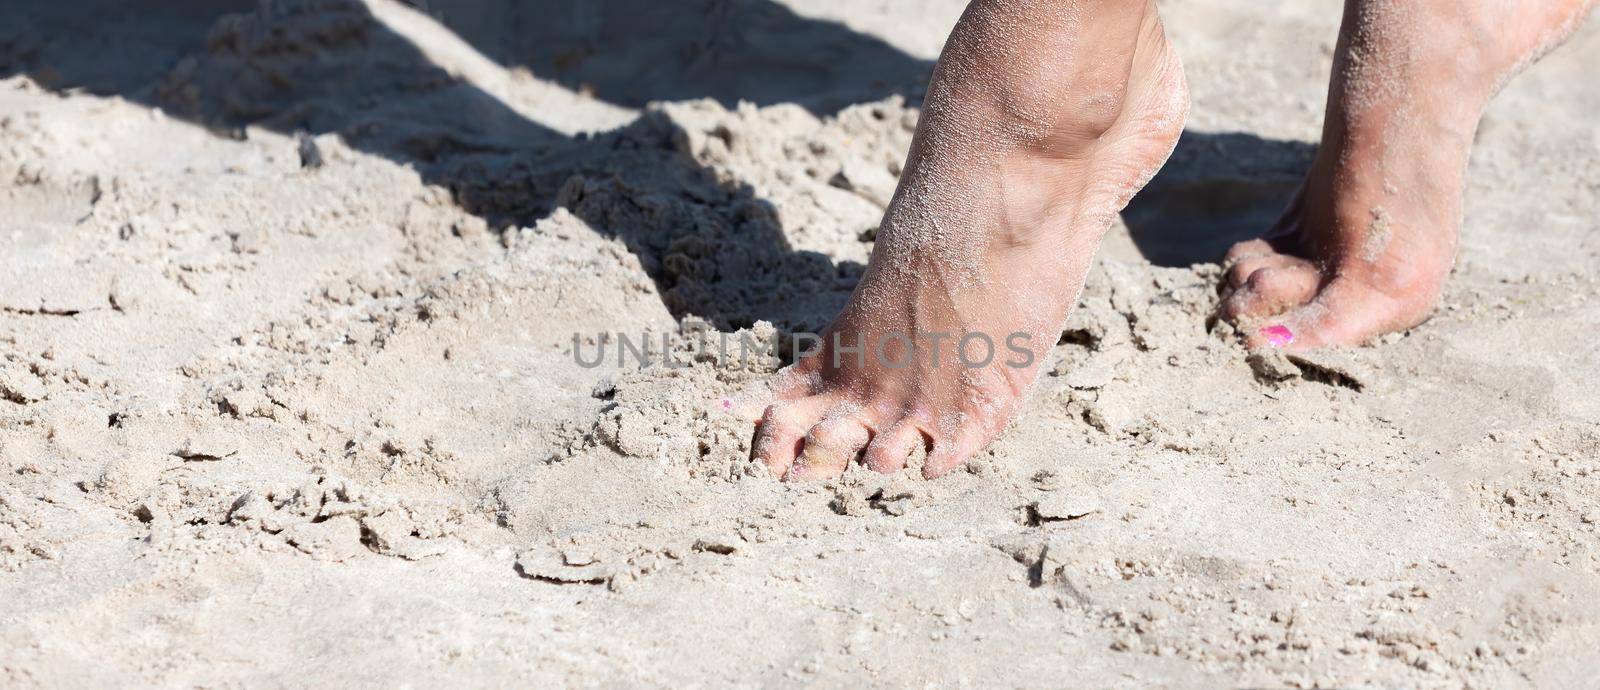 female feet on the seaside by palinchak